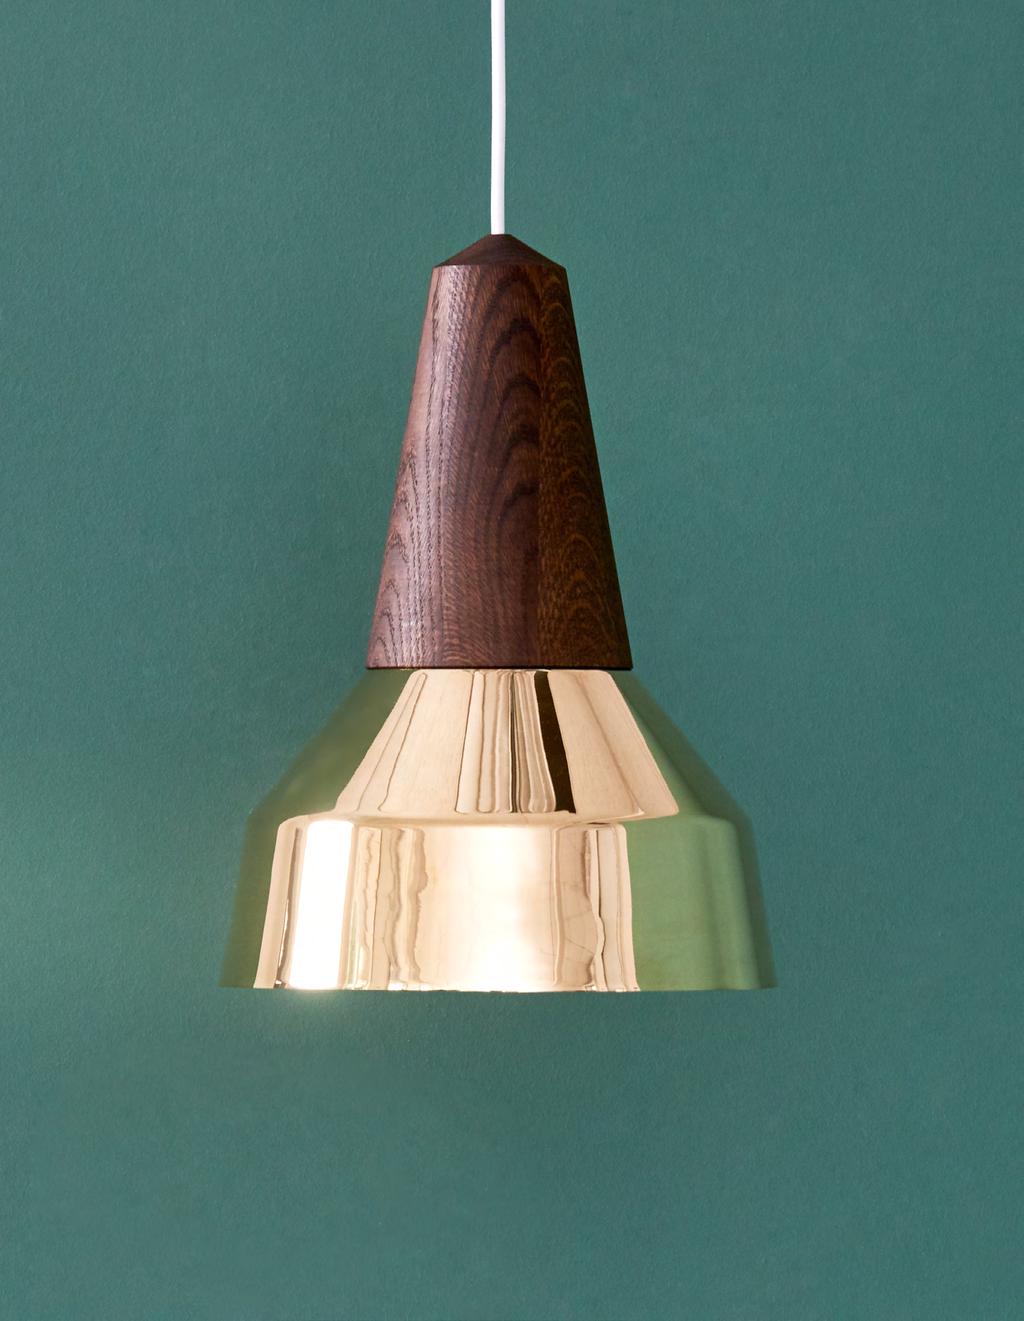 De eikon RAY Leuchte entworfen von Julia Mülling & Niklas Jessen 2015 Eikon Ray Messing mit Räuchereiche design Eikon Ray ist eine zeitlose minimalistische Leuchte, die aus zertifiziertem Holz und